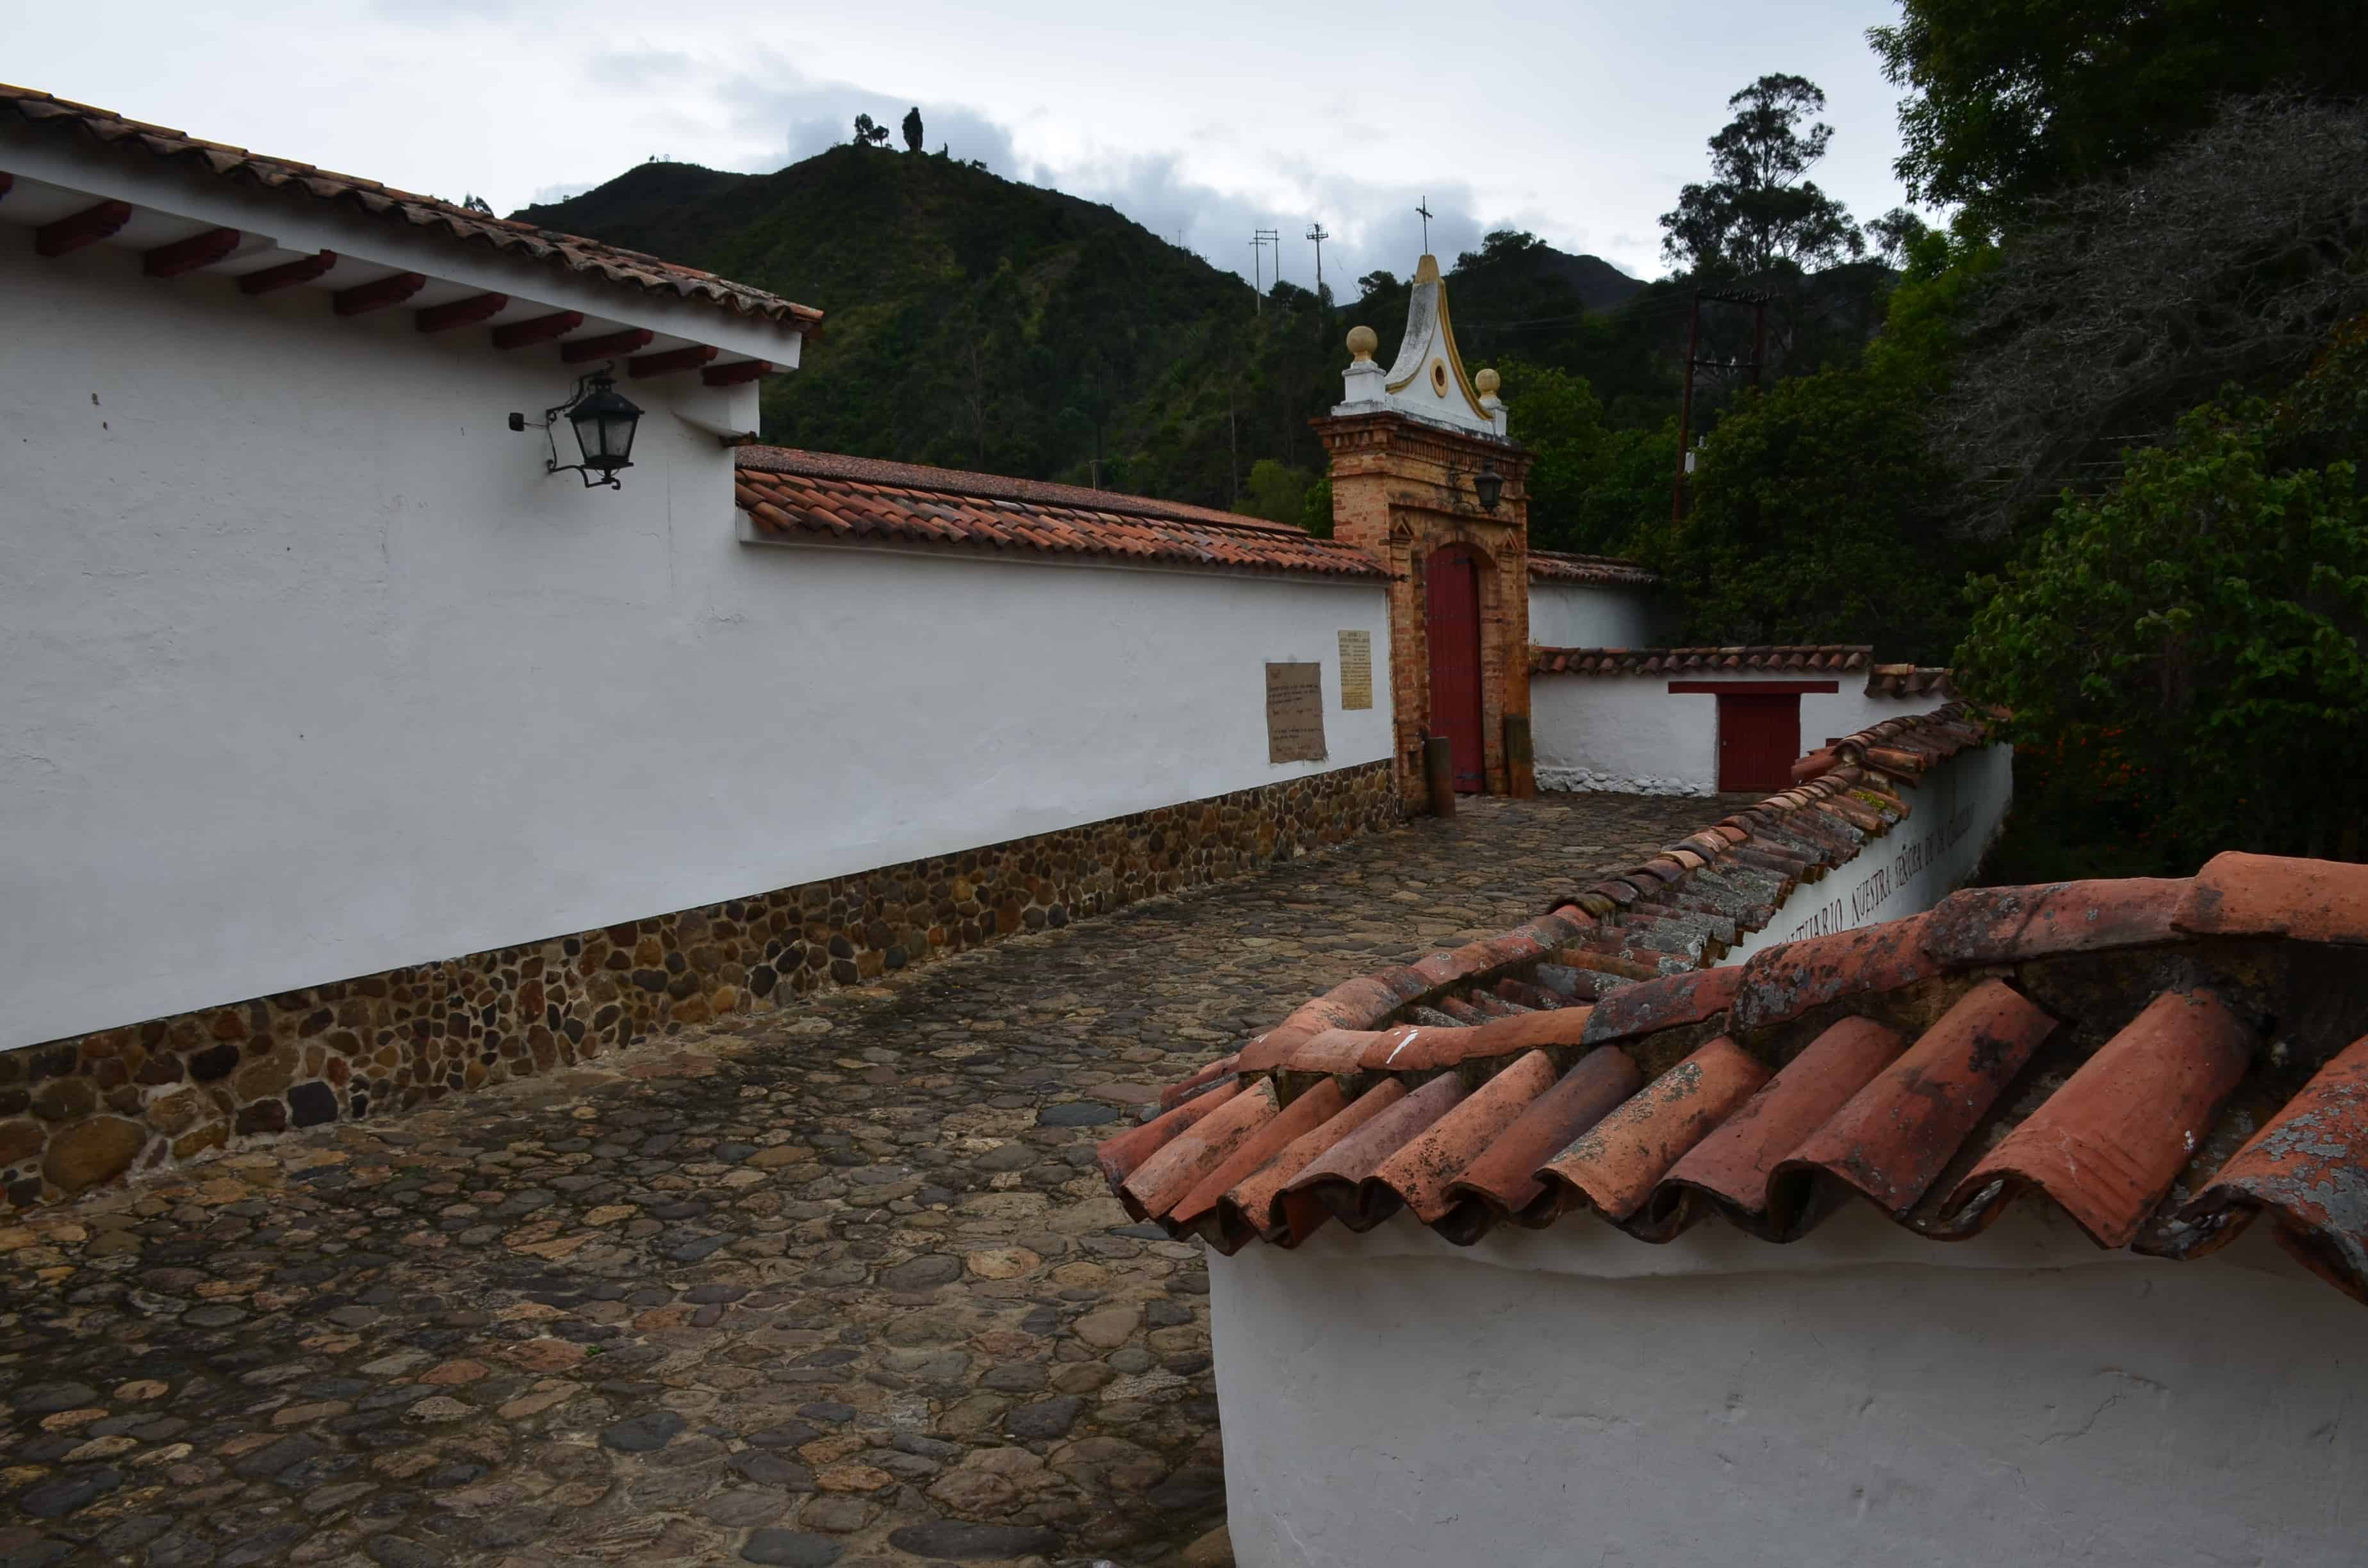 Entrance to La Candelaria Monastery, Boyacá, Colombia